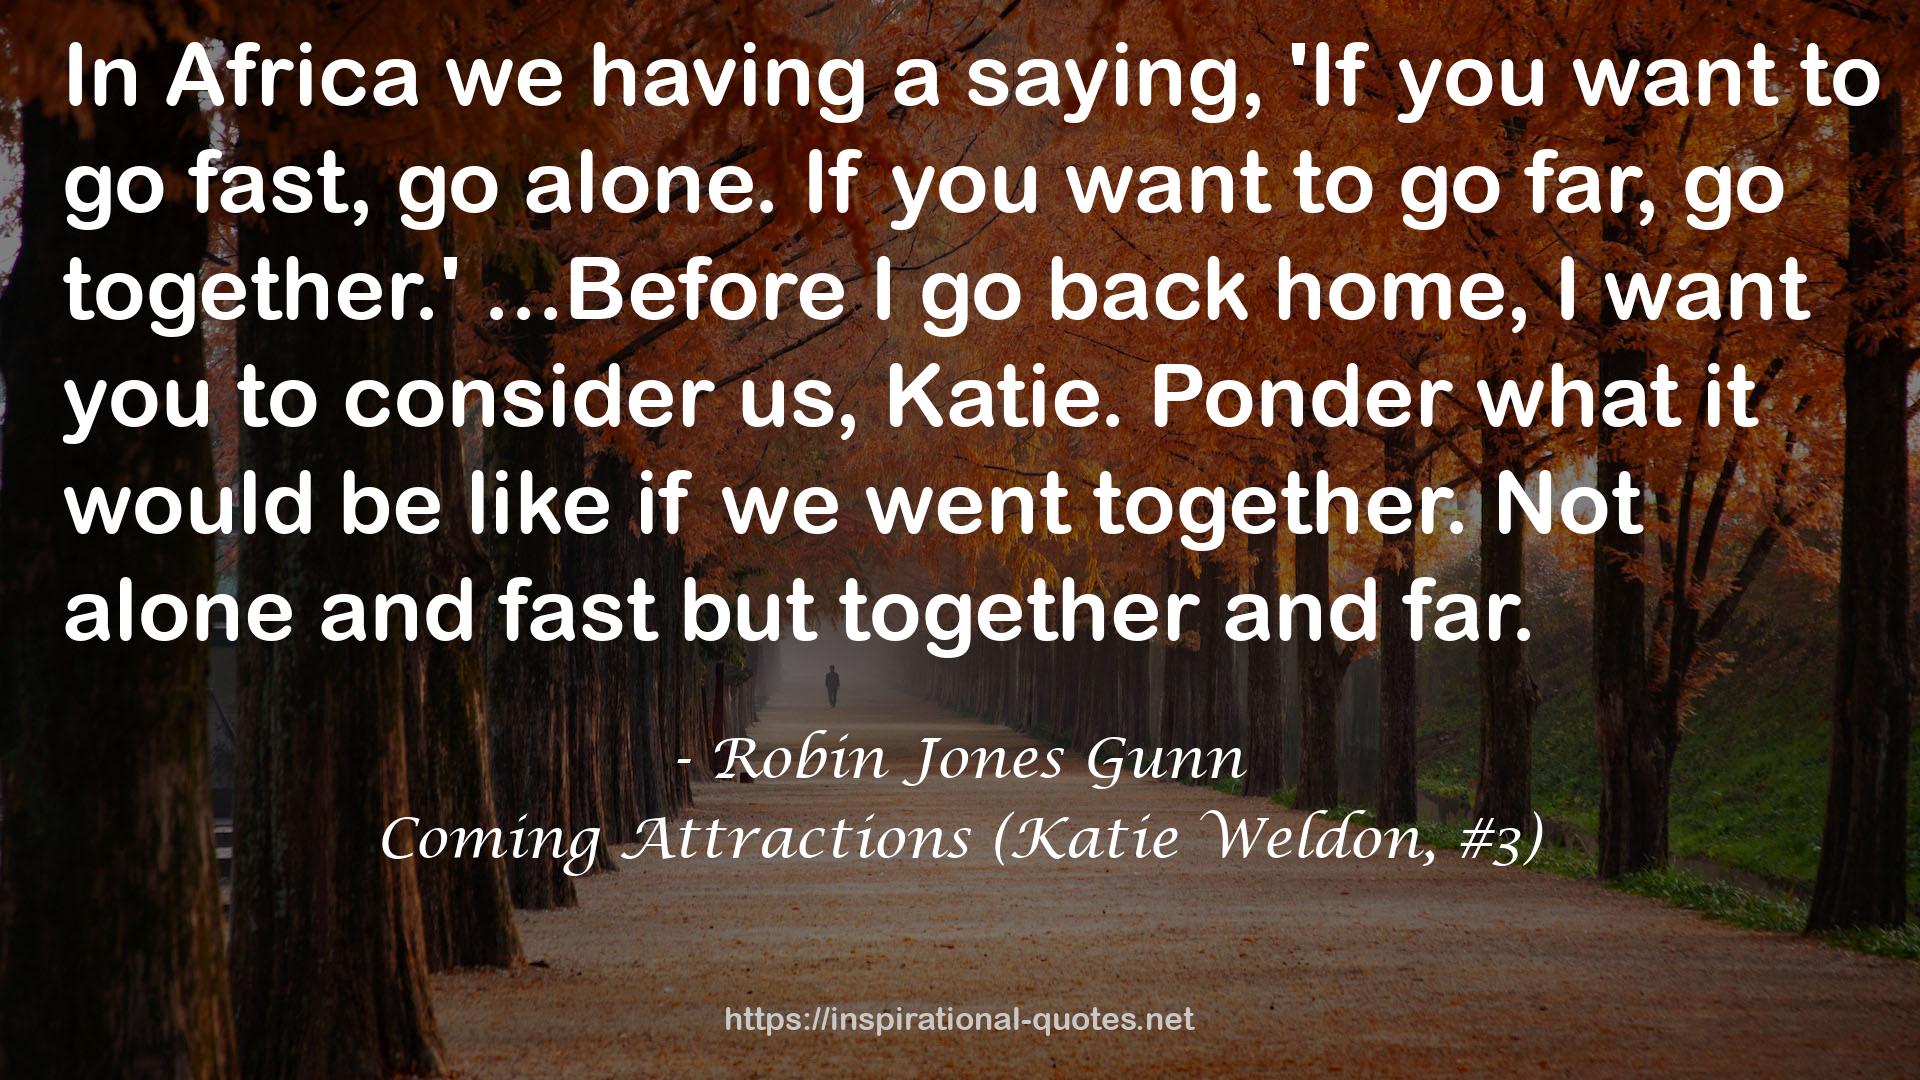 Coming Attractions (Katie Weldon, #3) QUOTES